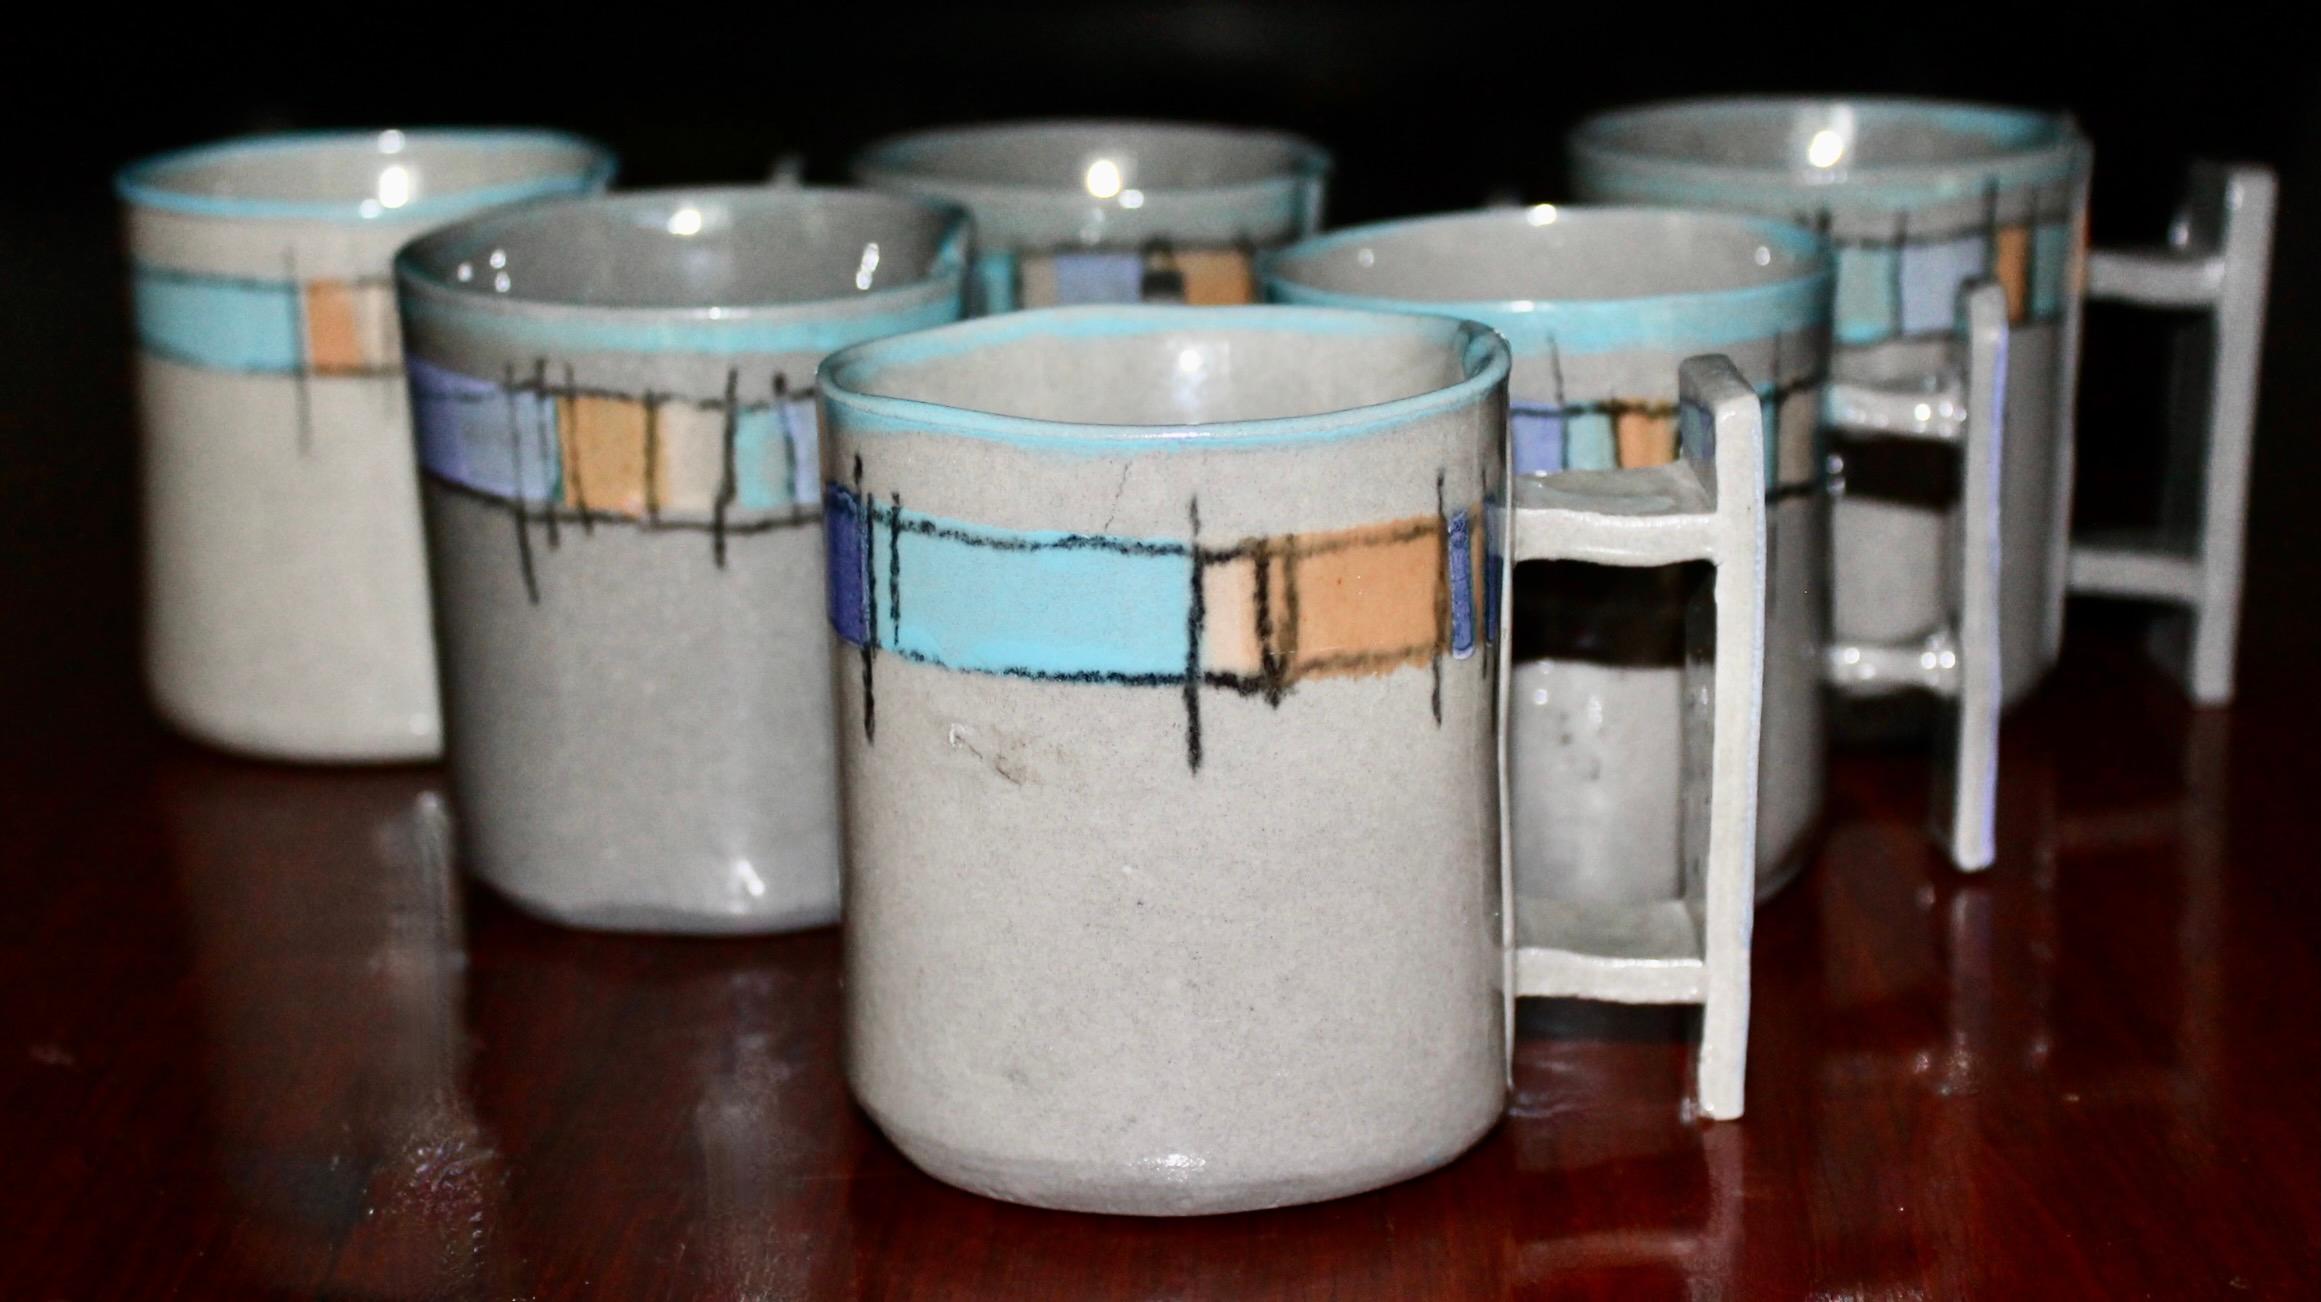 Rare série de 6 tasses en céramique grise de Dorothy Hafner (1977), fabriquées à la main par cette importante designer/fabricante.